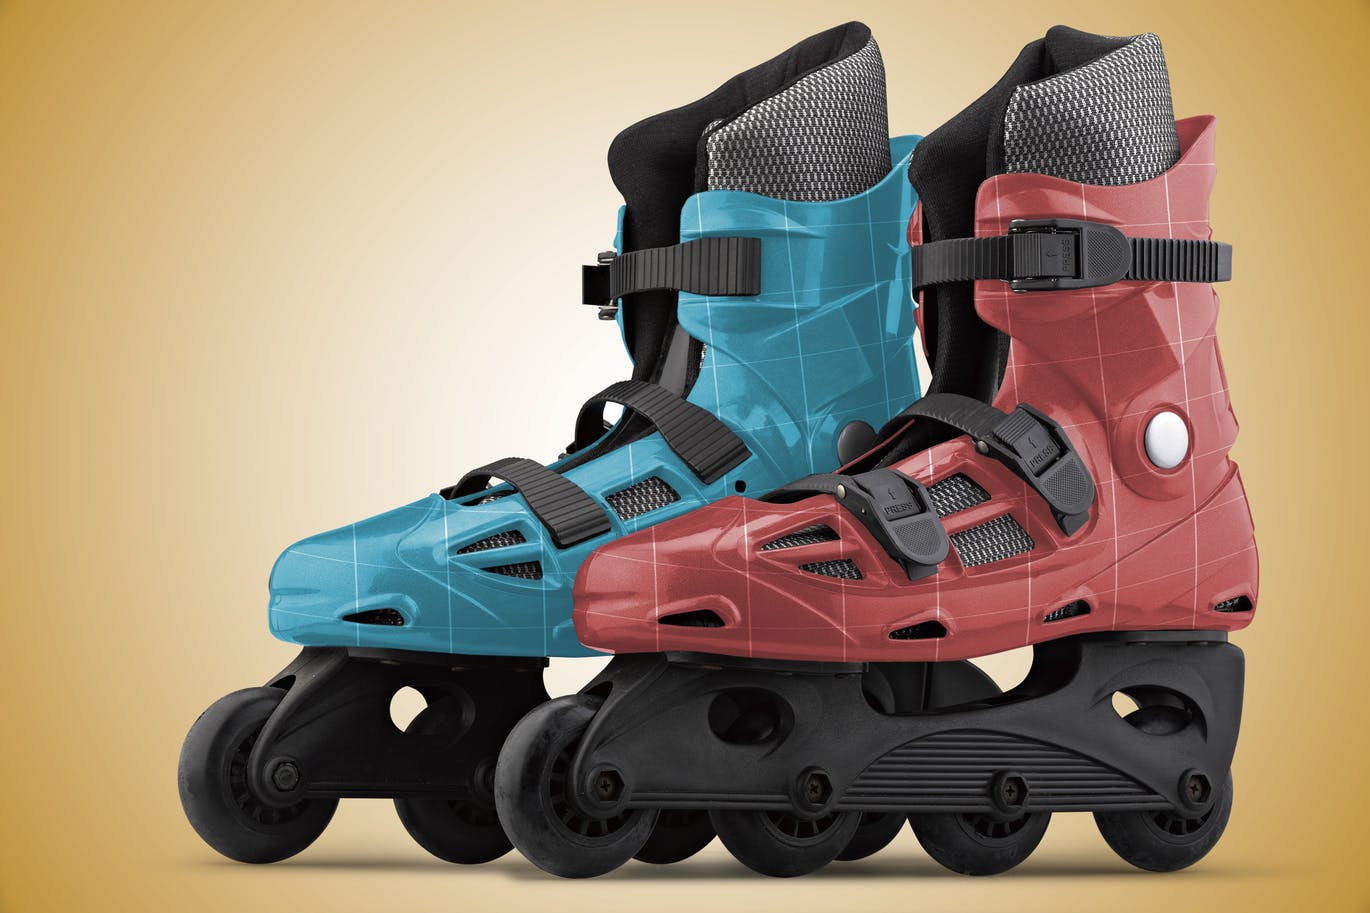 旱冰鞋溜冰鞋外观设计样机第一素材精选模板 Roller_Skate-Mockup插图